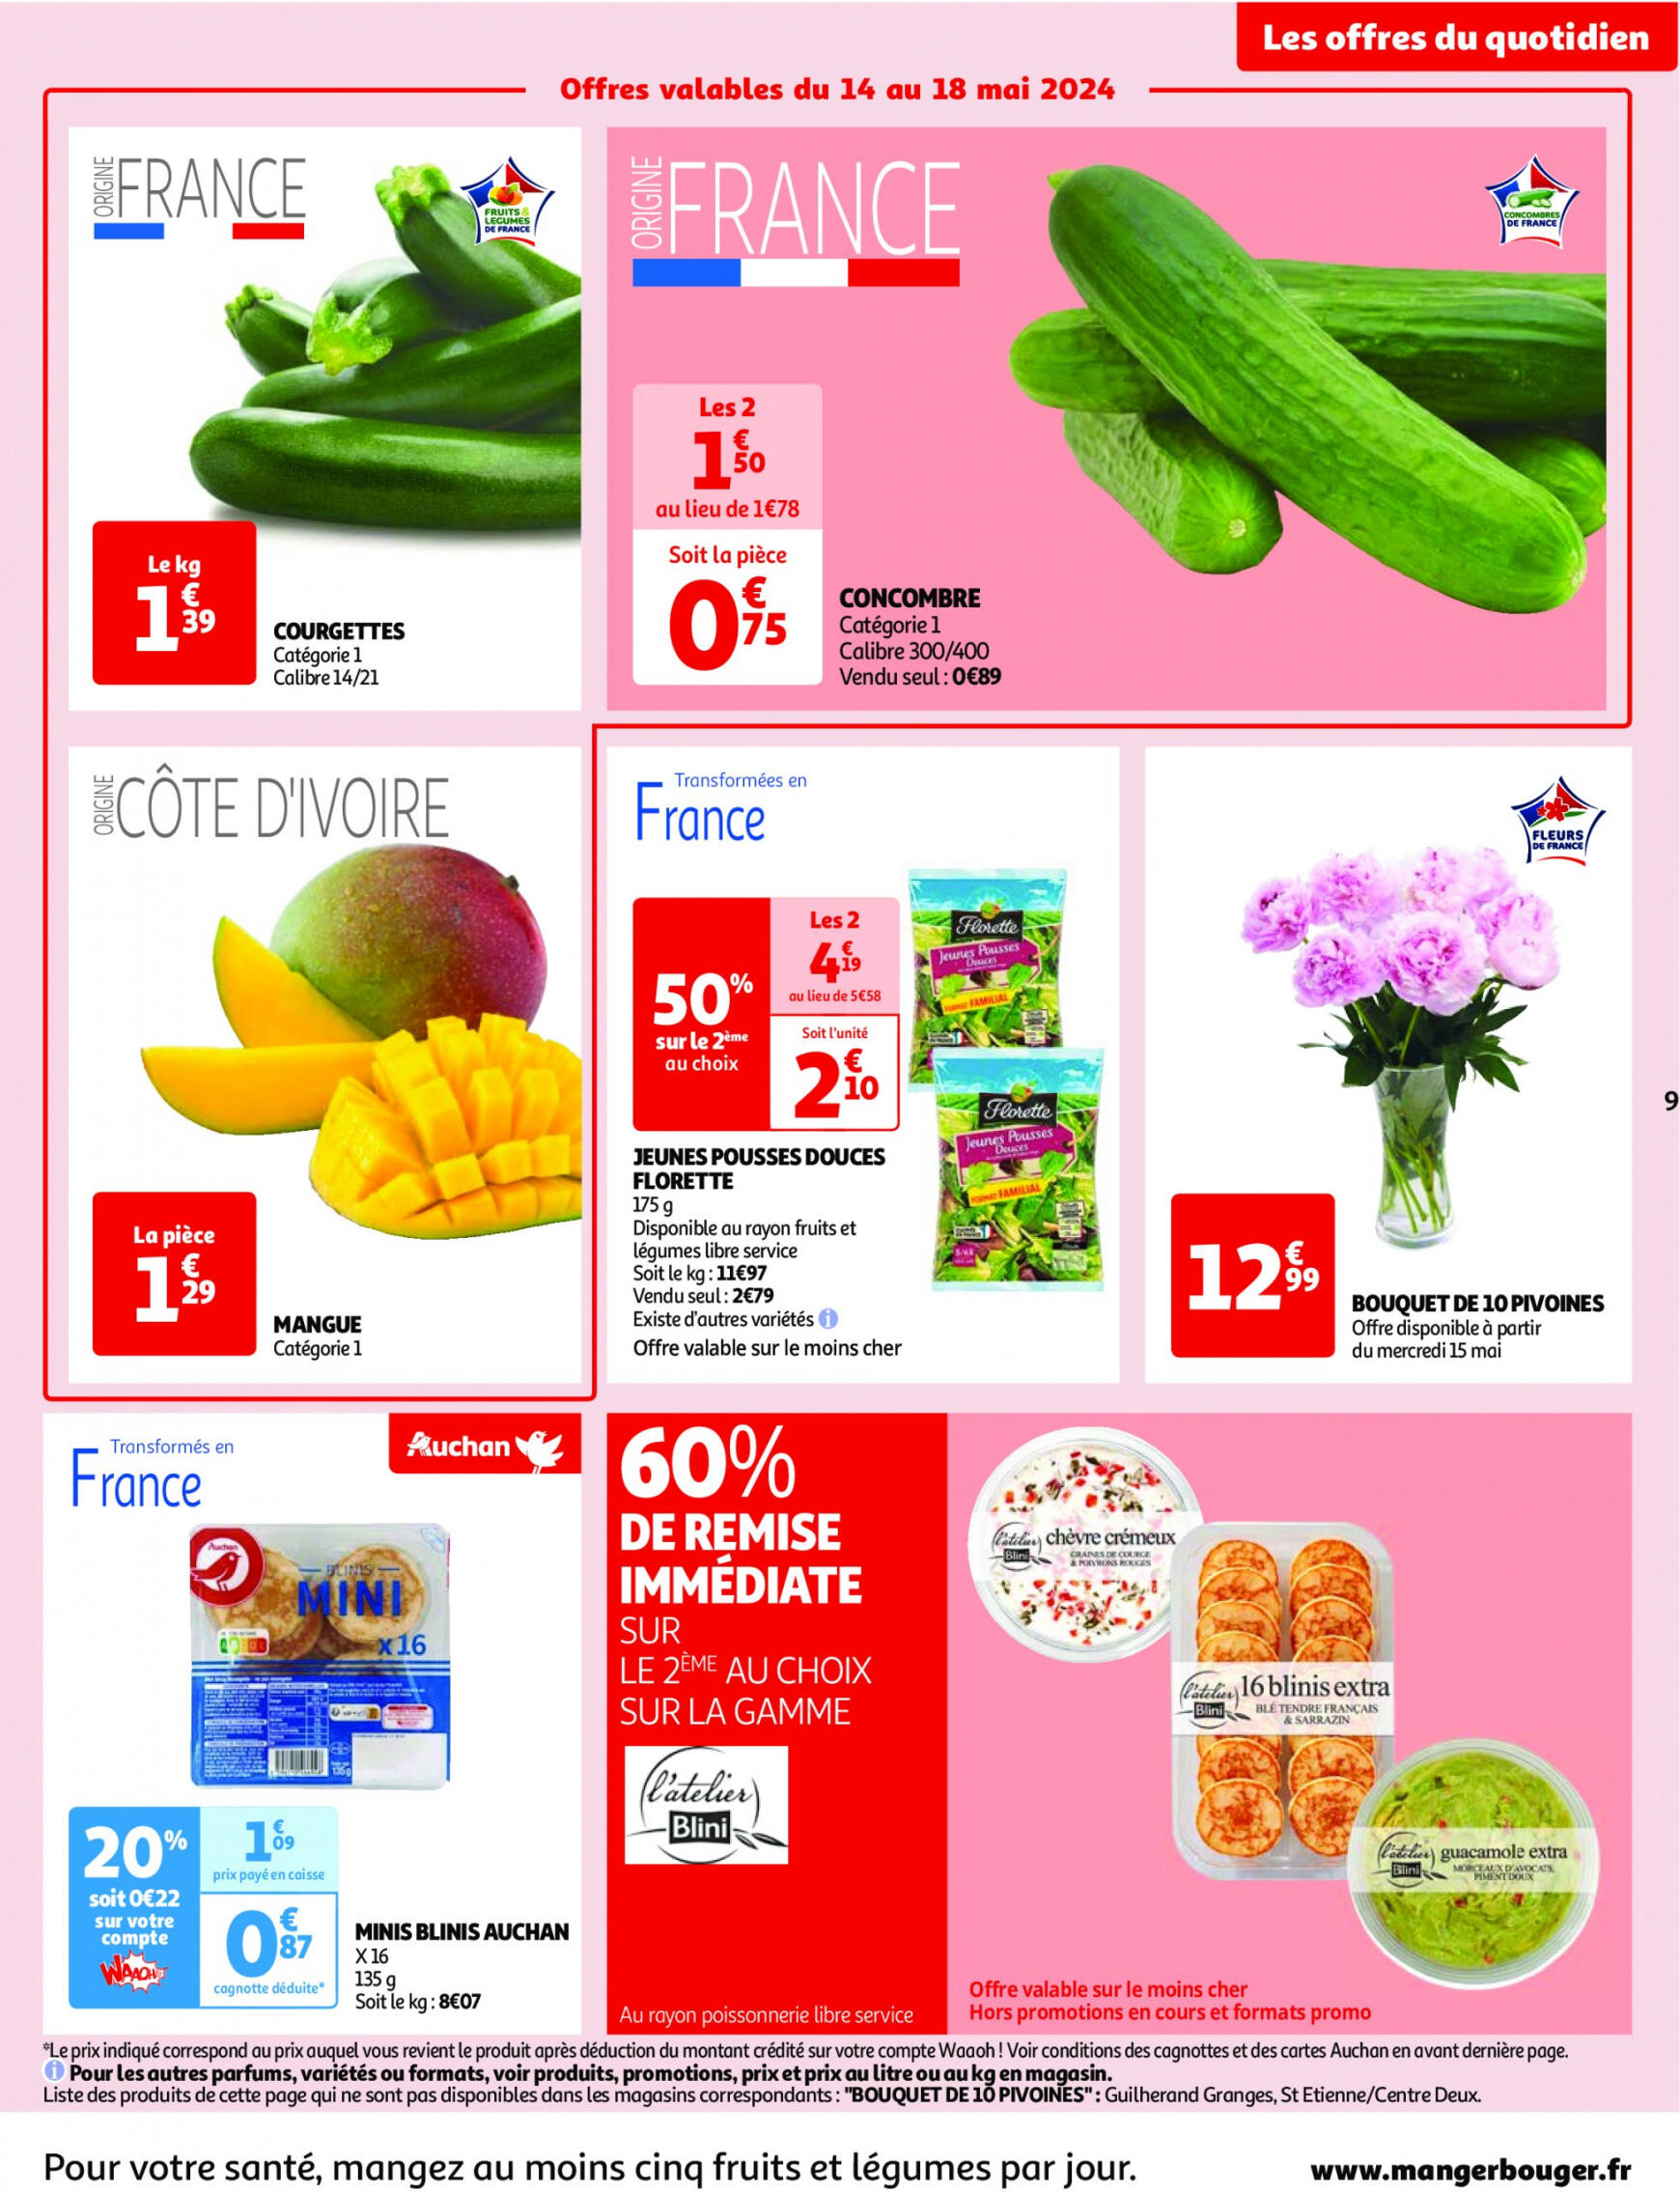 auchan - Auchan - Nos surgelés ont tout bon folder huidig 14.05. - 21.05. - page: 9